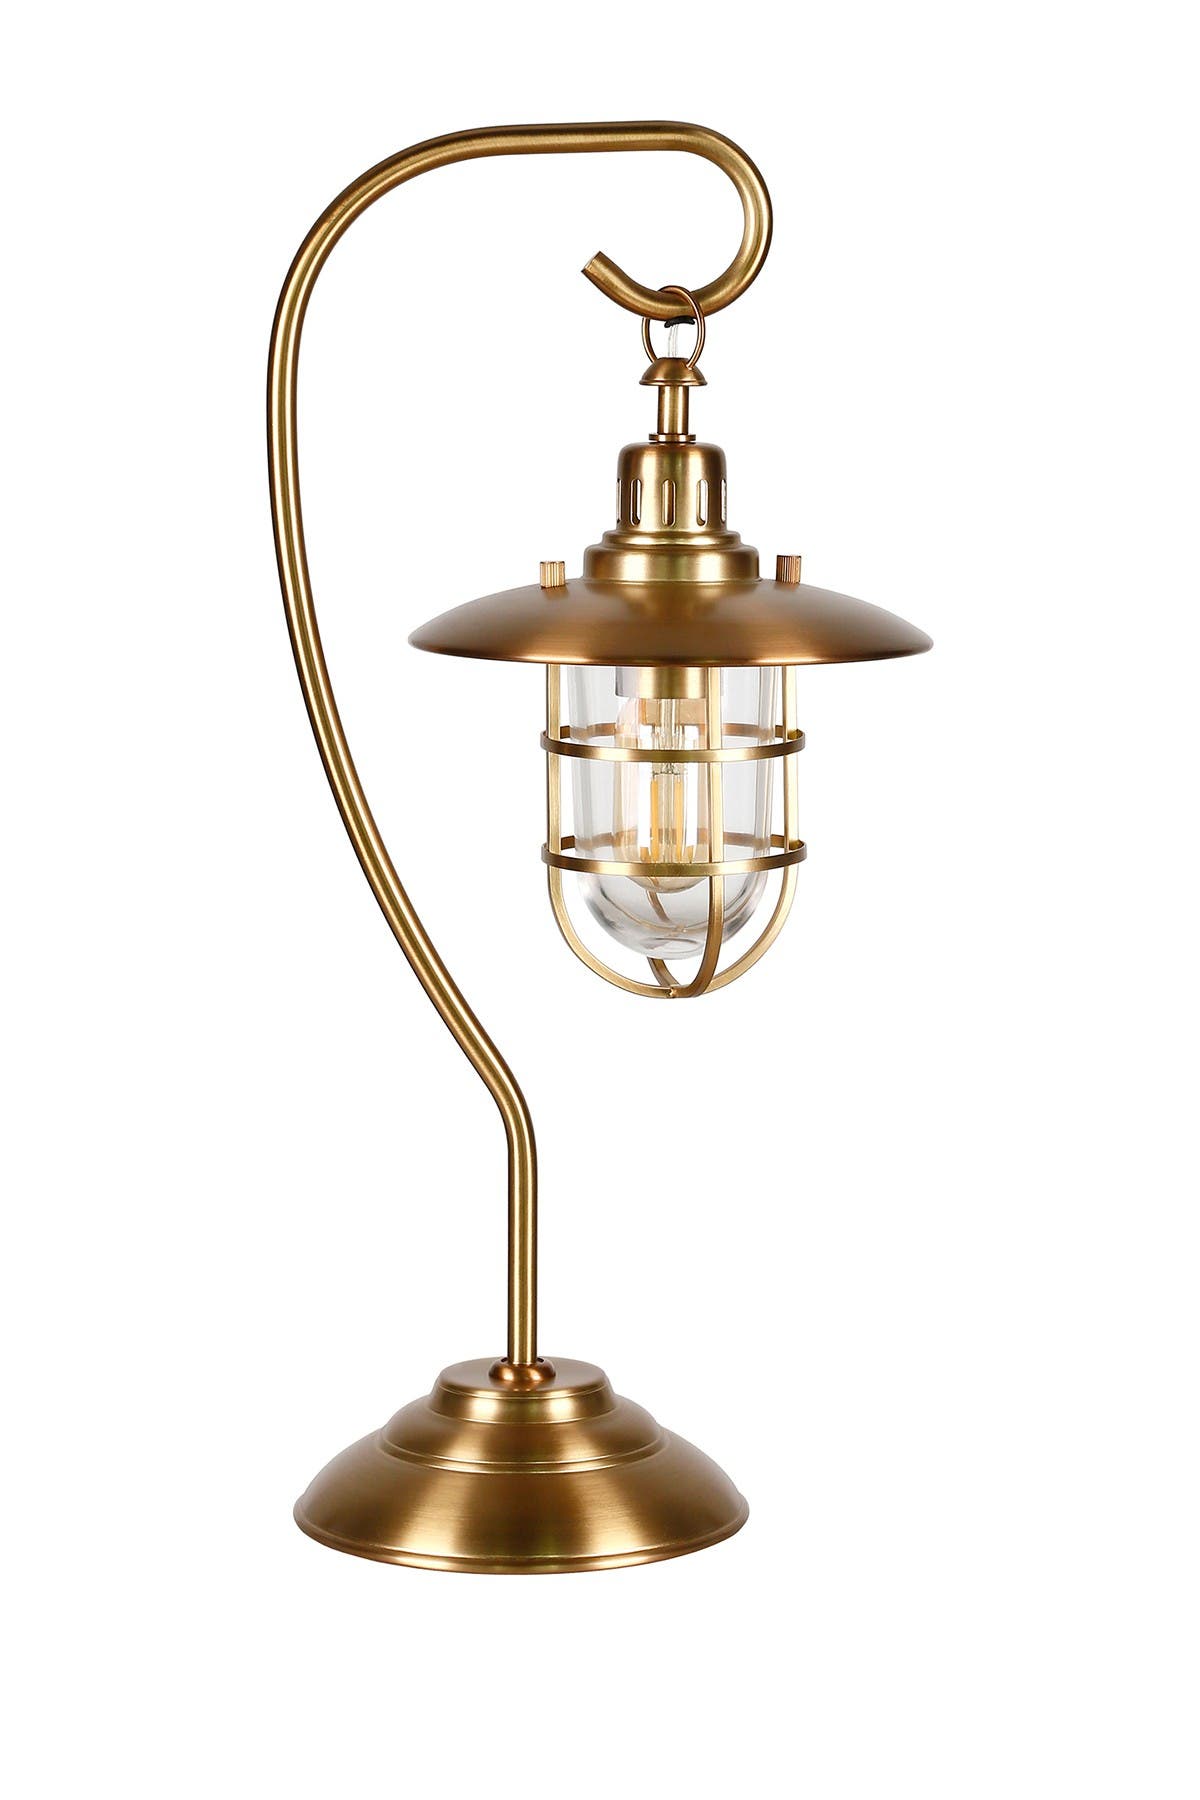 Addison And Lane Bay Antique Brass Nautical Lantern Lamp In Medium Brown1